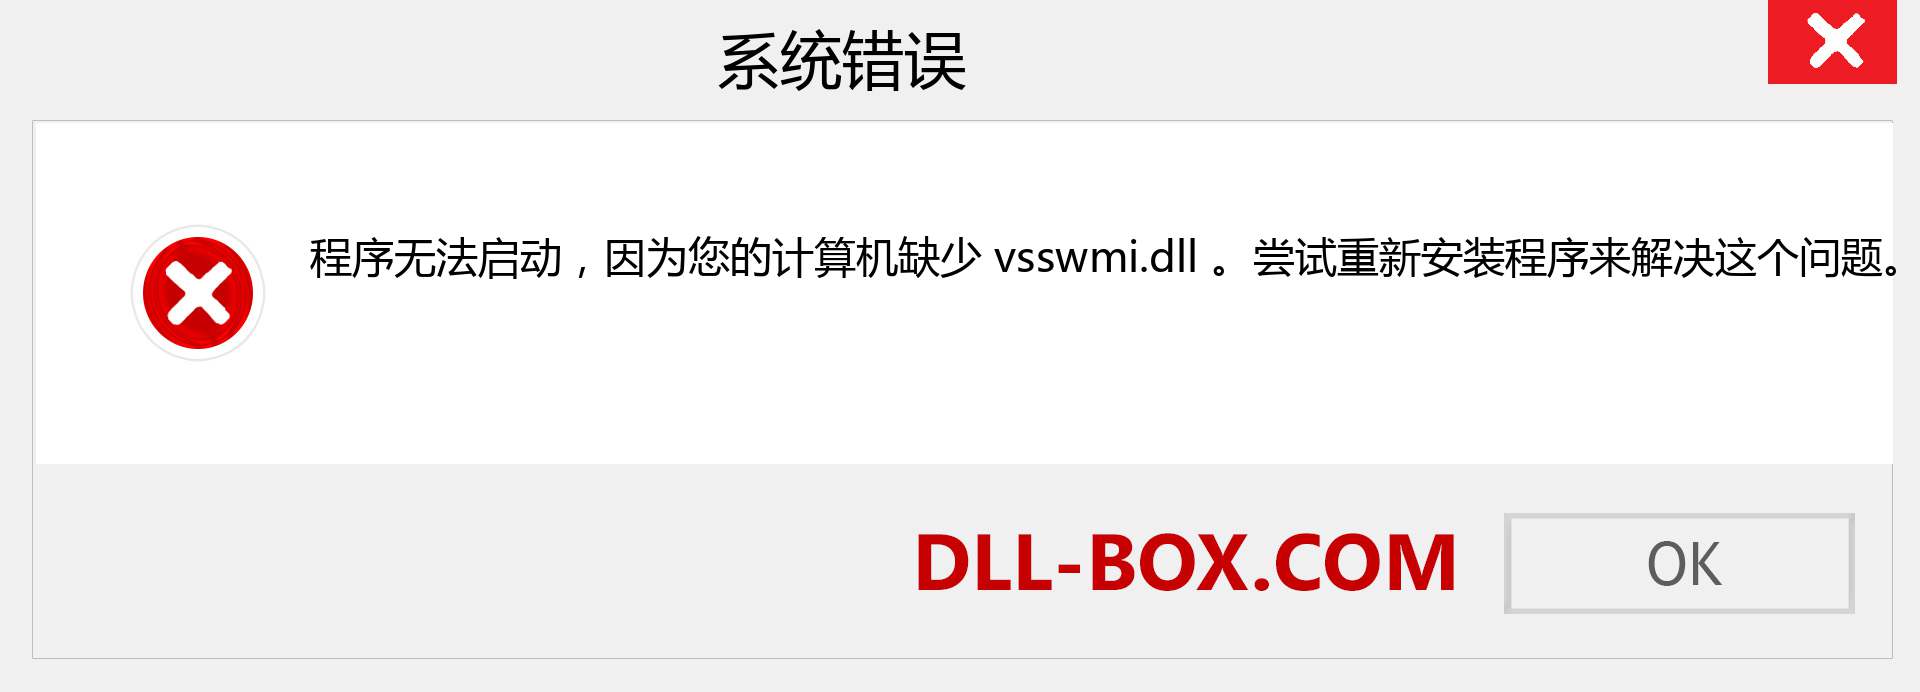 vsswmi.dll 文件丢失？。 适用于 Windows 7、8、10 的下载 - 修复 Windows、照片、图像上的 vsswmi dll 丢失错误